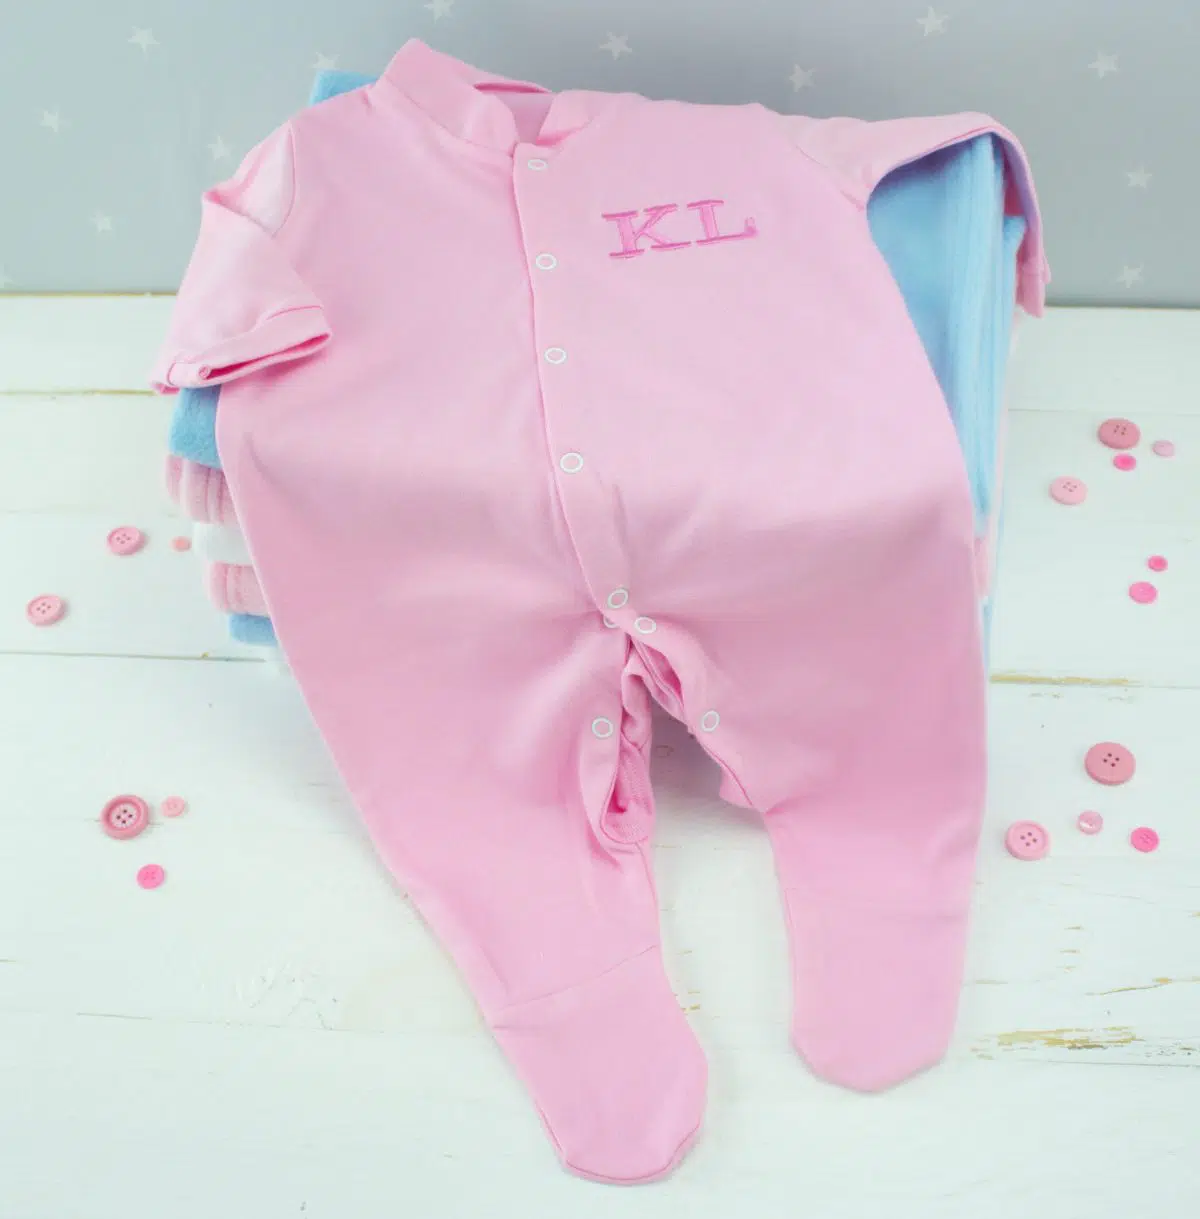 Personalised baby girl sleepsuit - pink